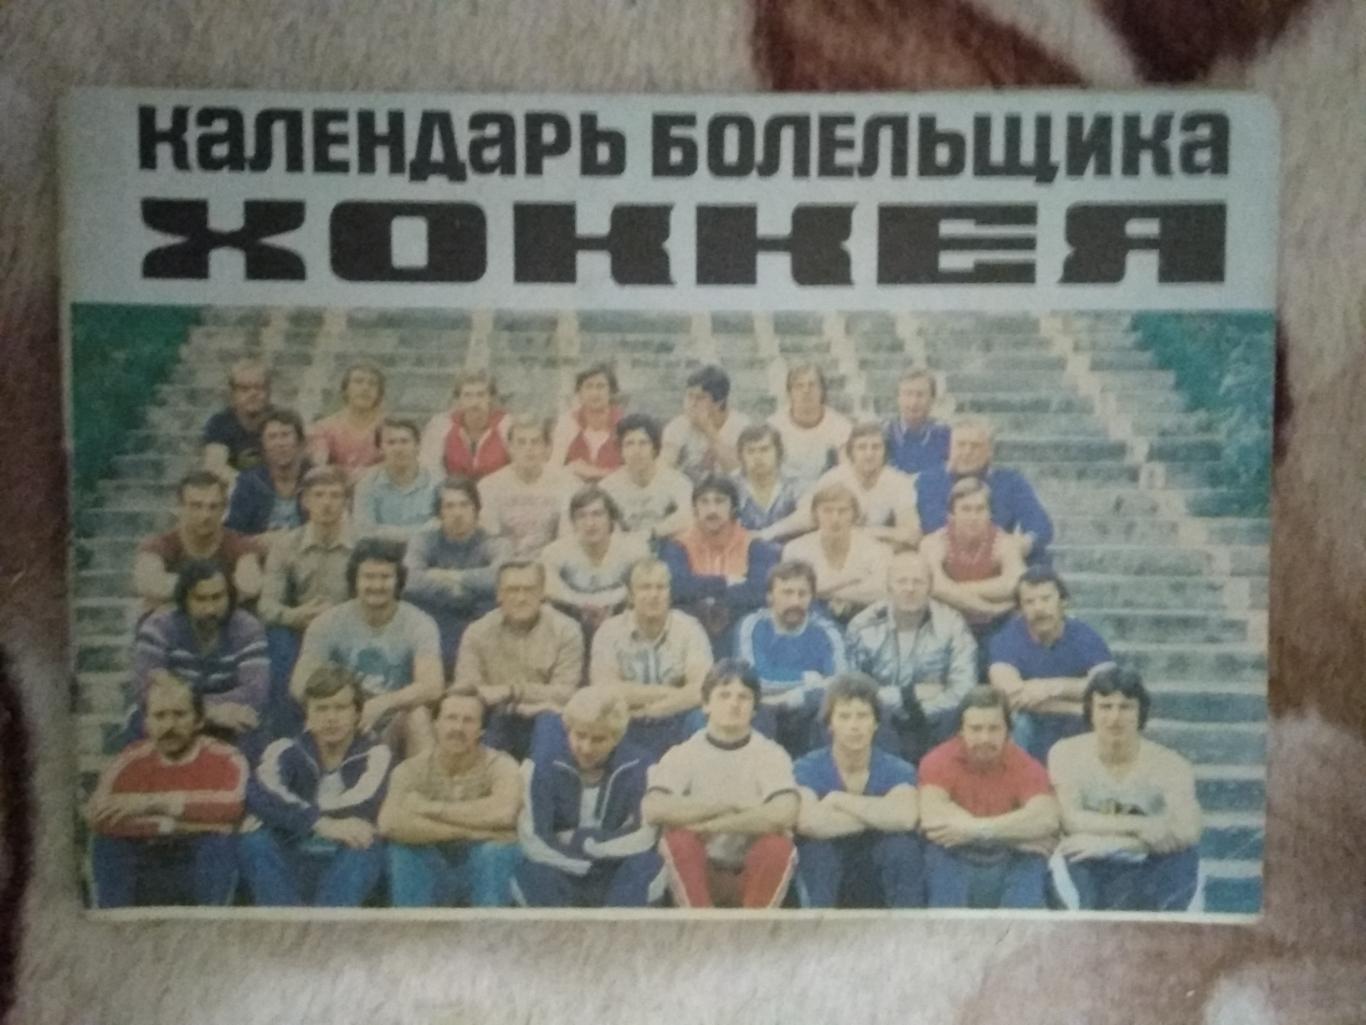 Хоккей.Рига 1979-1980 г. (рус.яз.).